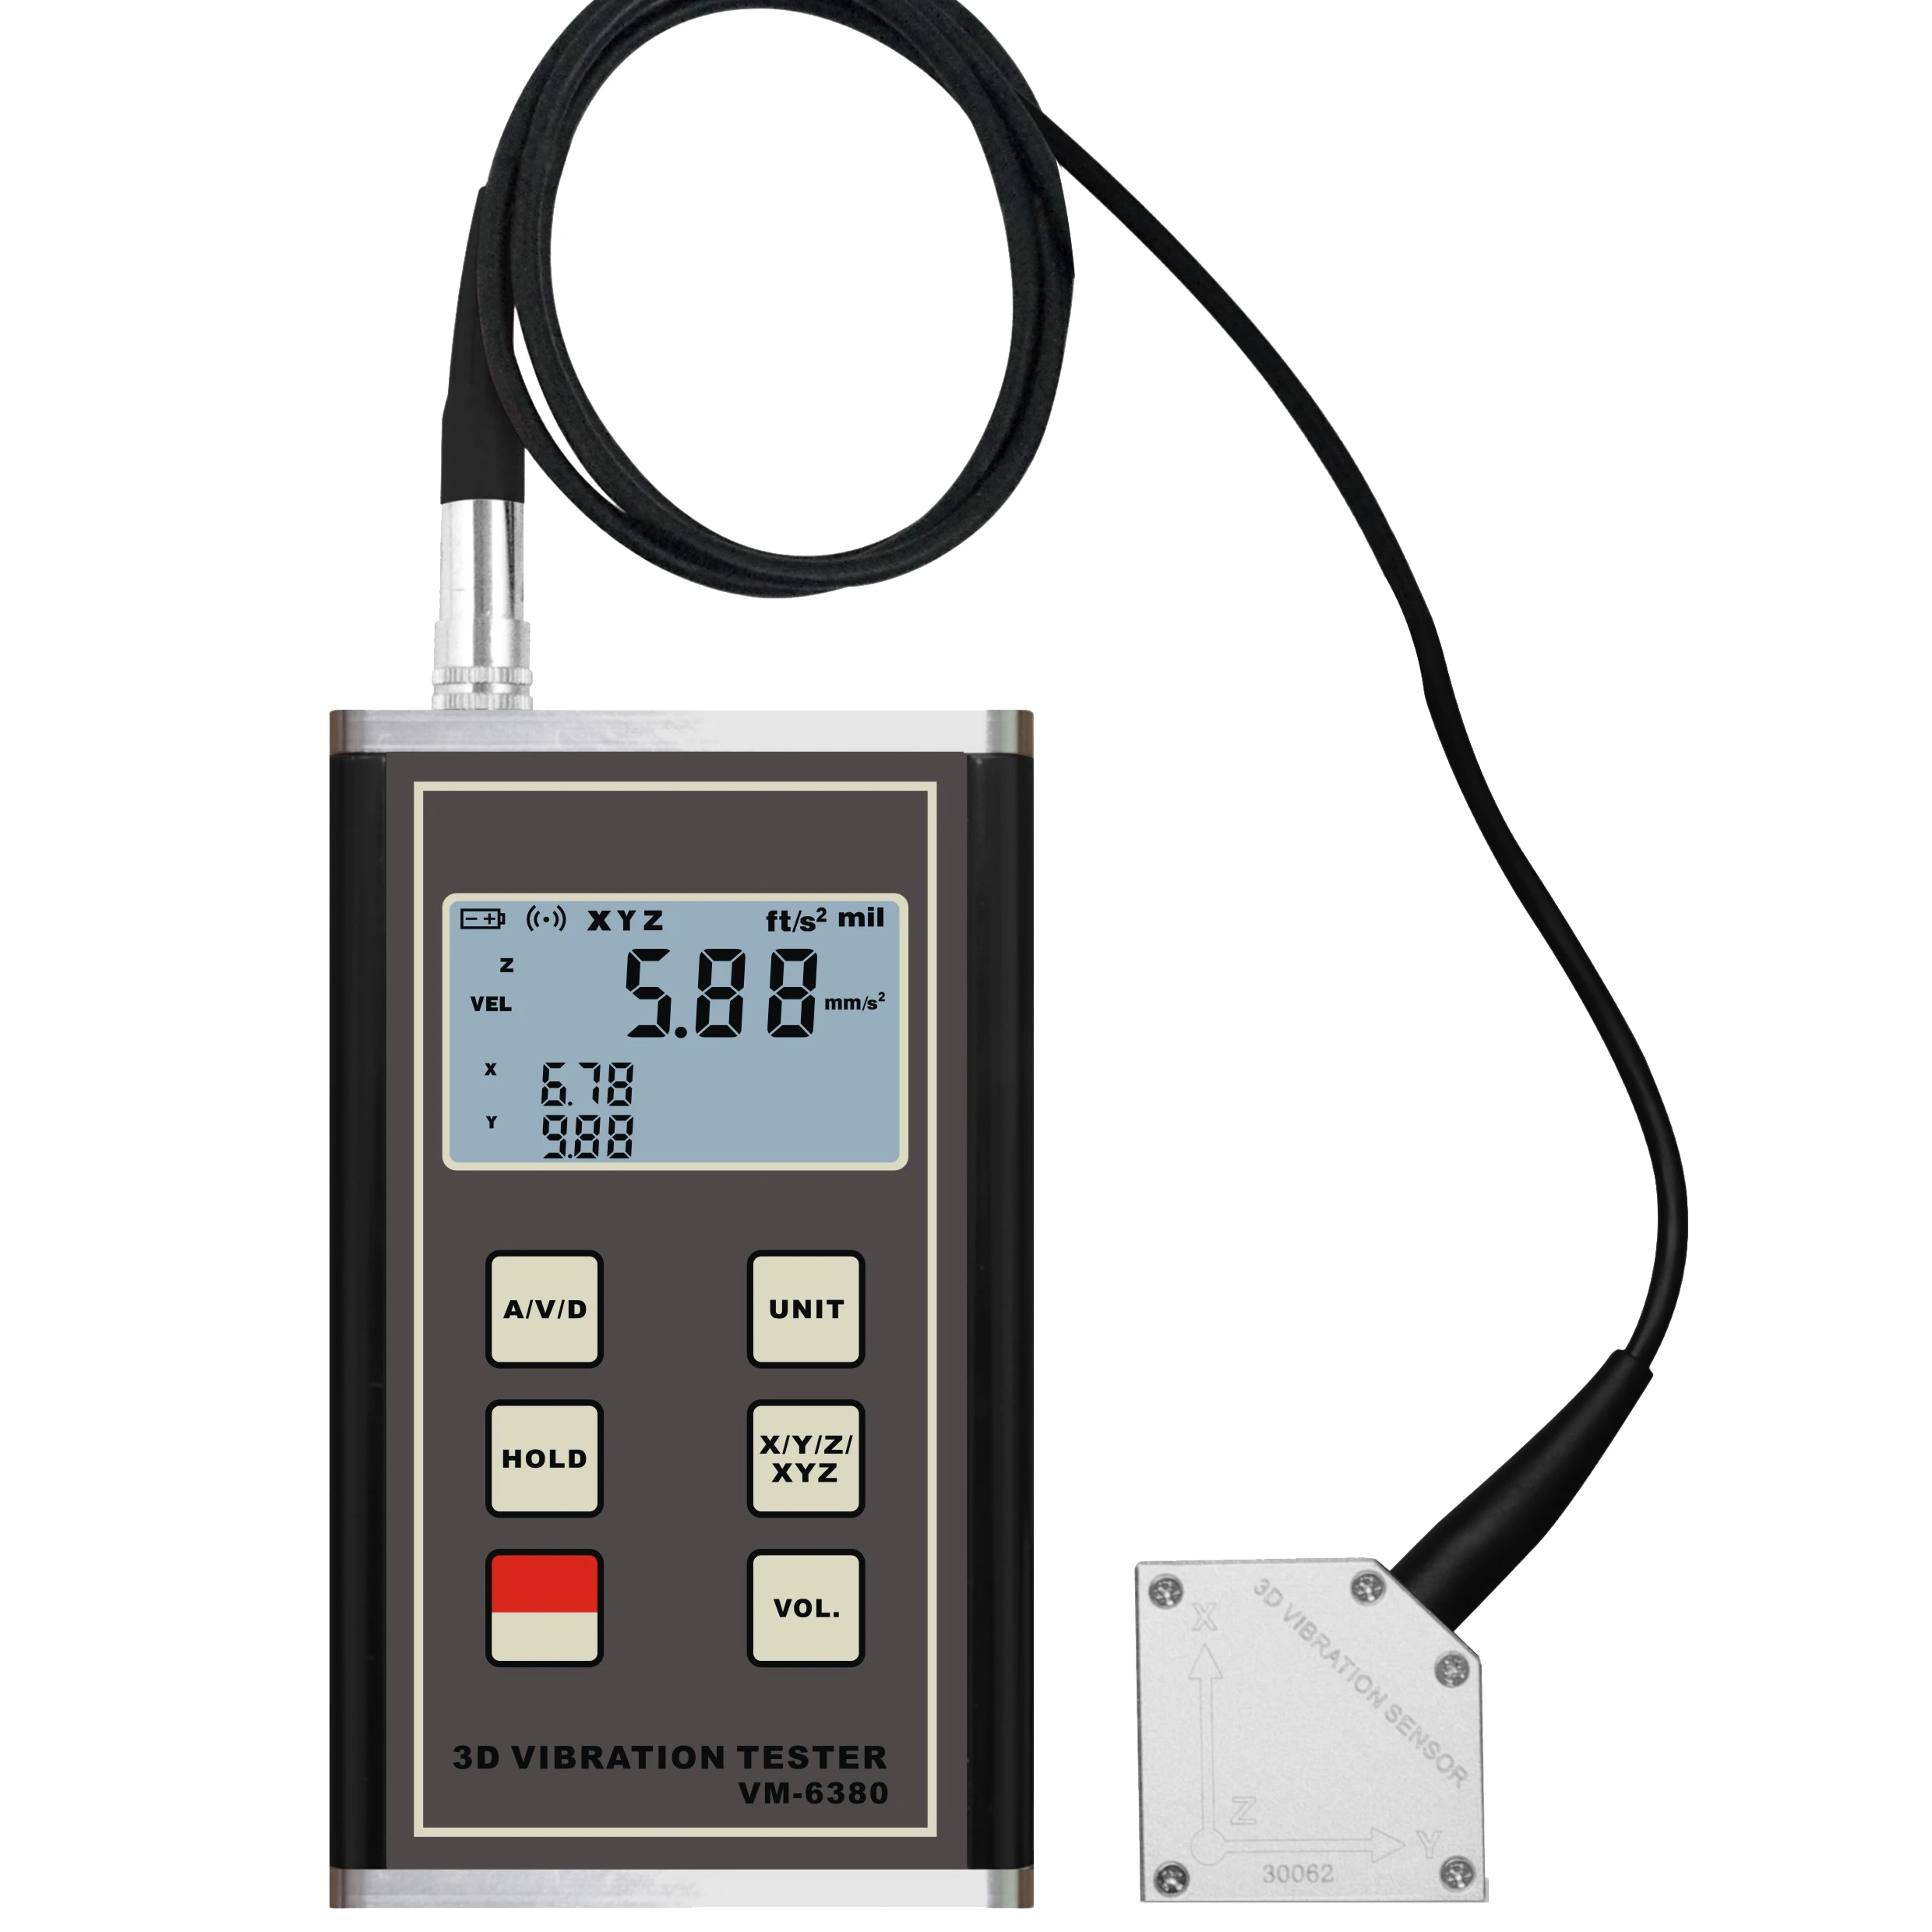 

LANDTEK 3-Axis Accelerometer X. Y. Z Digital Vibration Meter Tester VM-6380